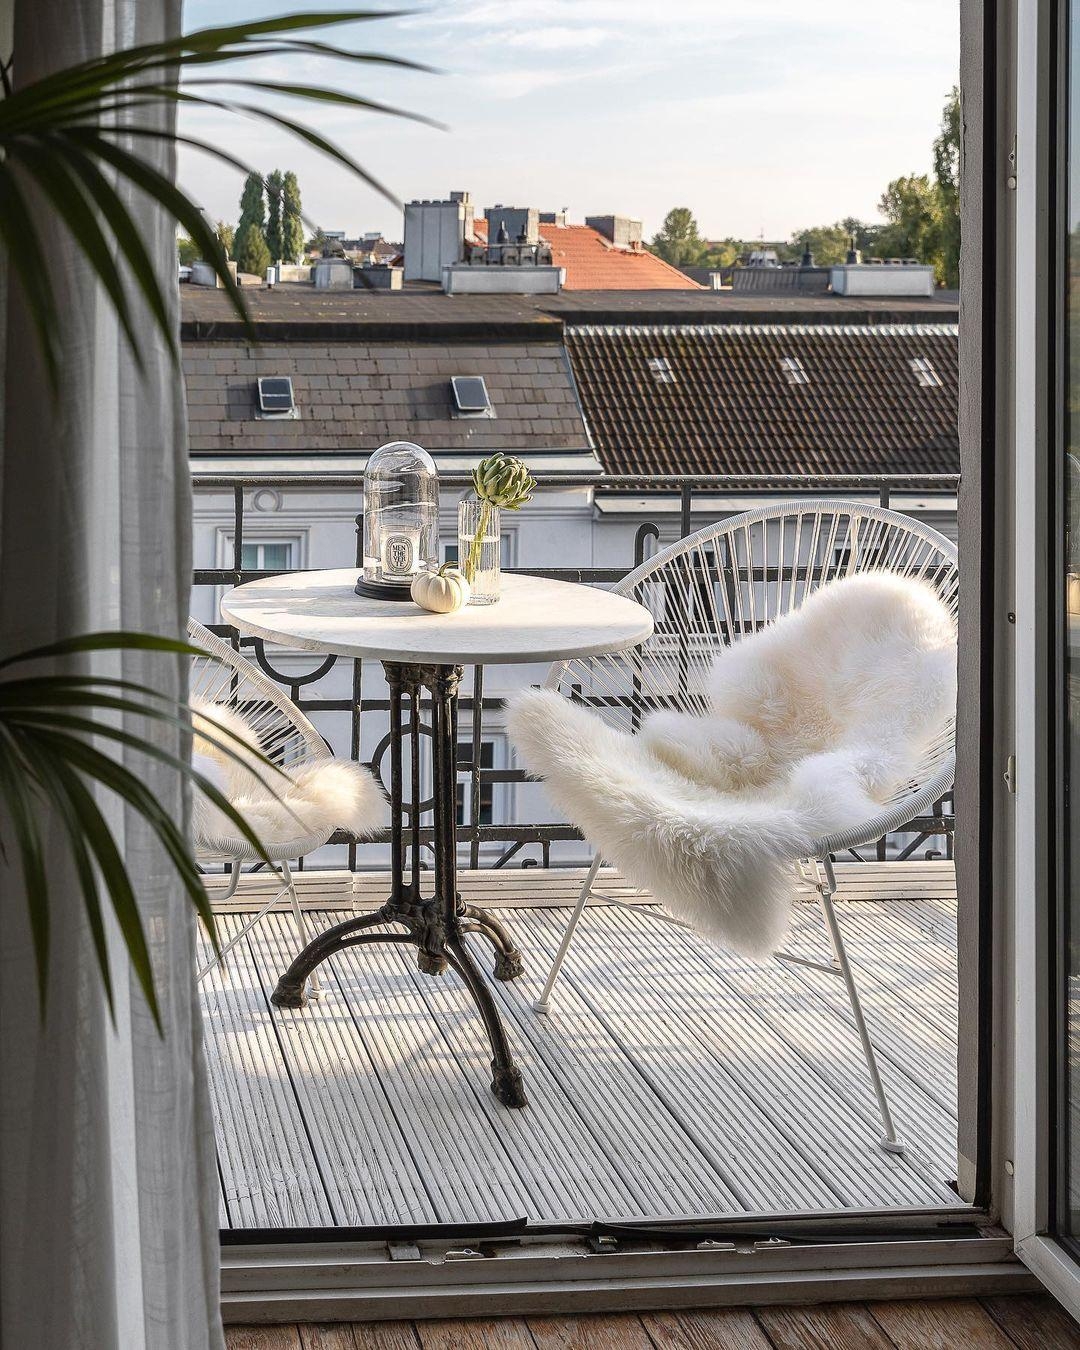 Moinjour 🥐☕️

#balkon #ausblick #balcony #view #ausblick #altbau #altbauliebe #stuhl #tisch #herbst #sommer #couchstyle